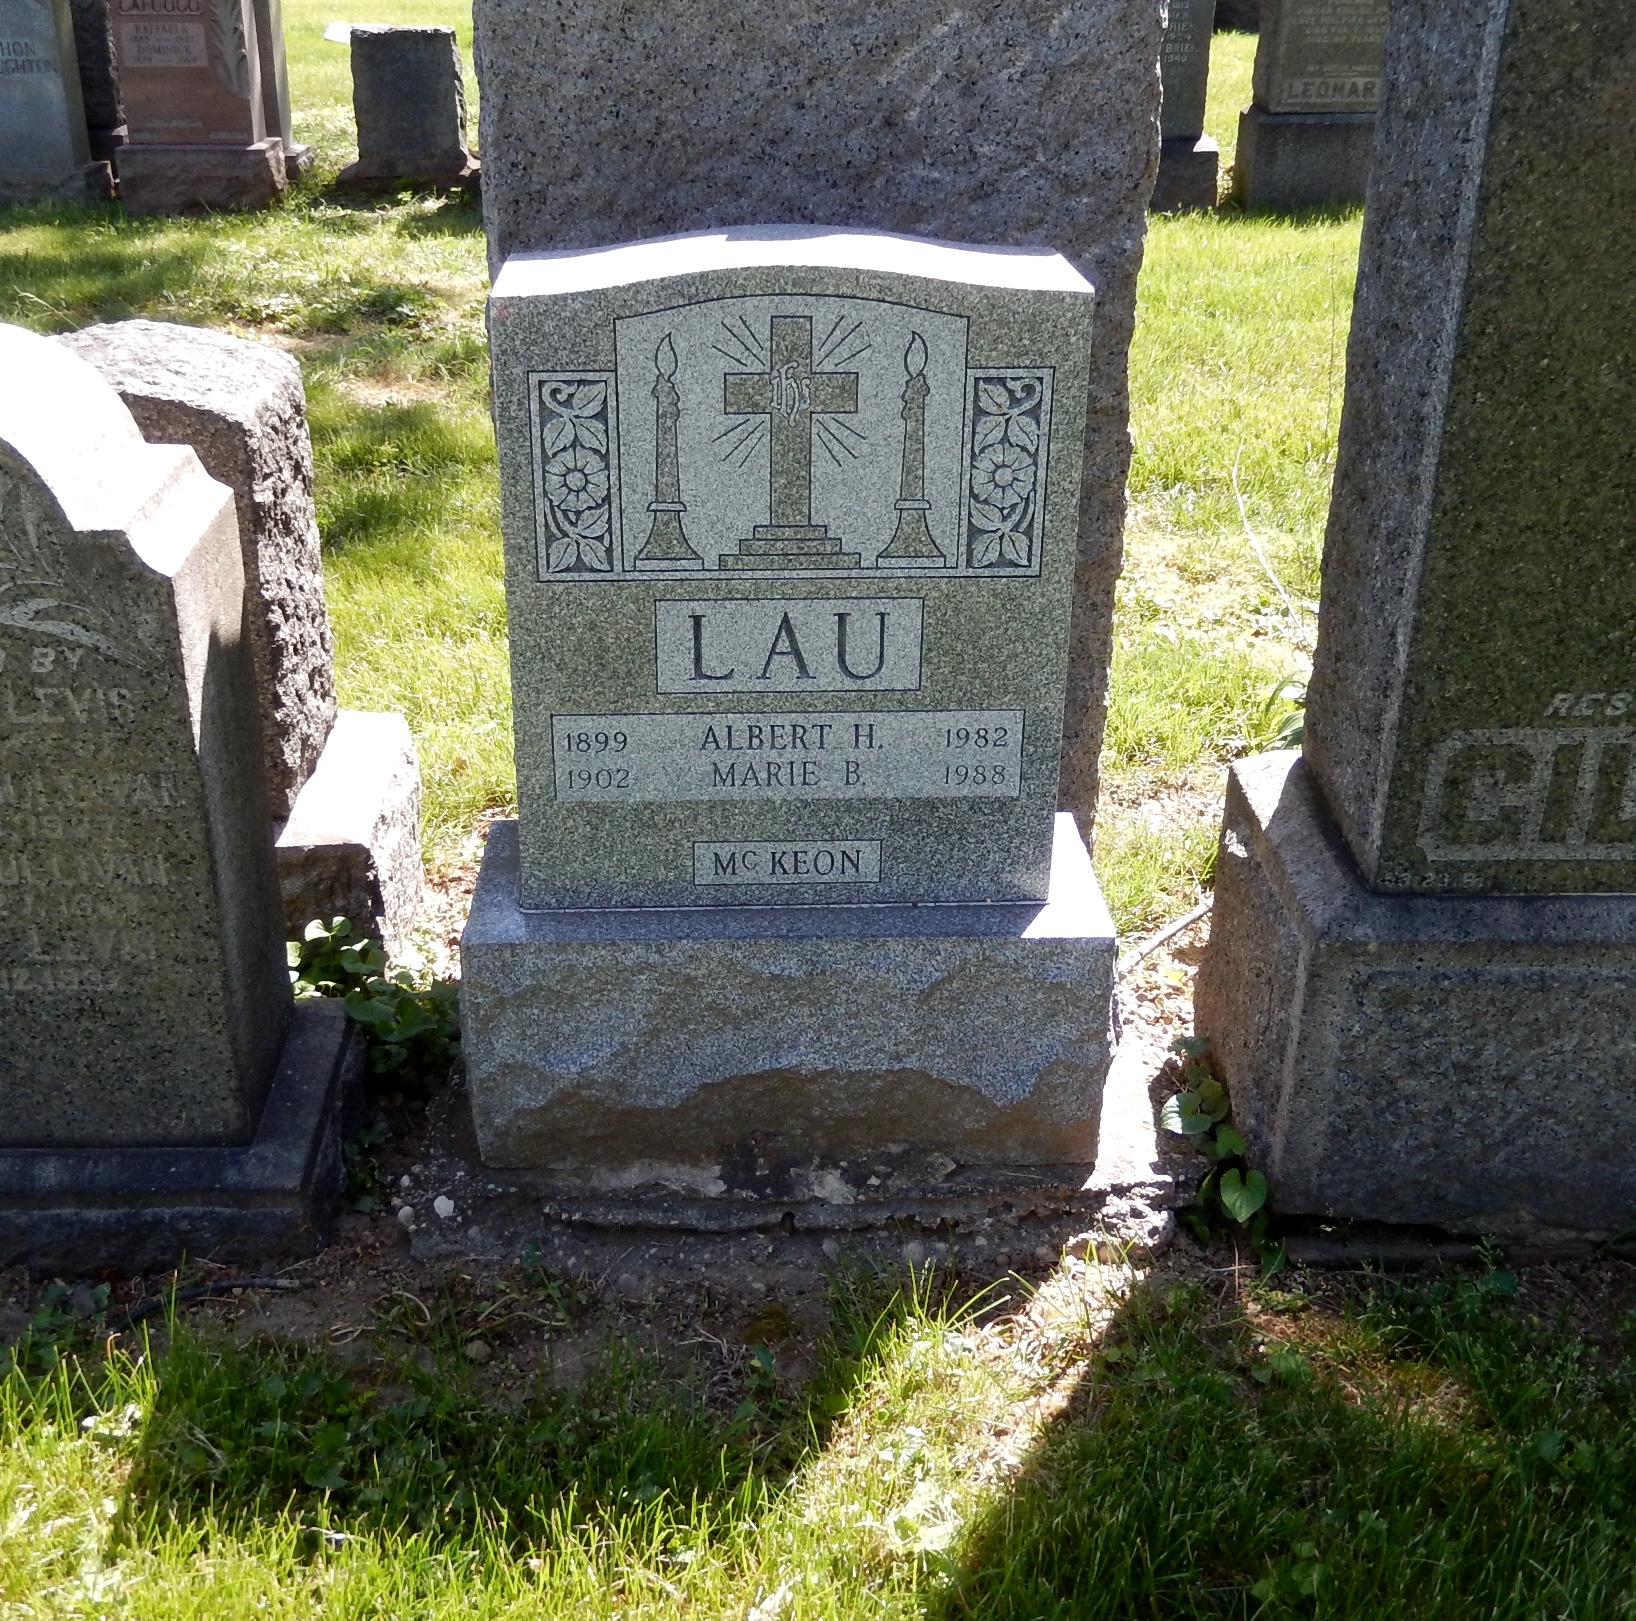 Albert H. Lau Grave